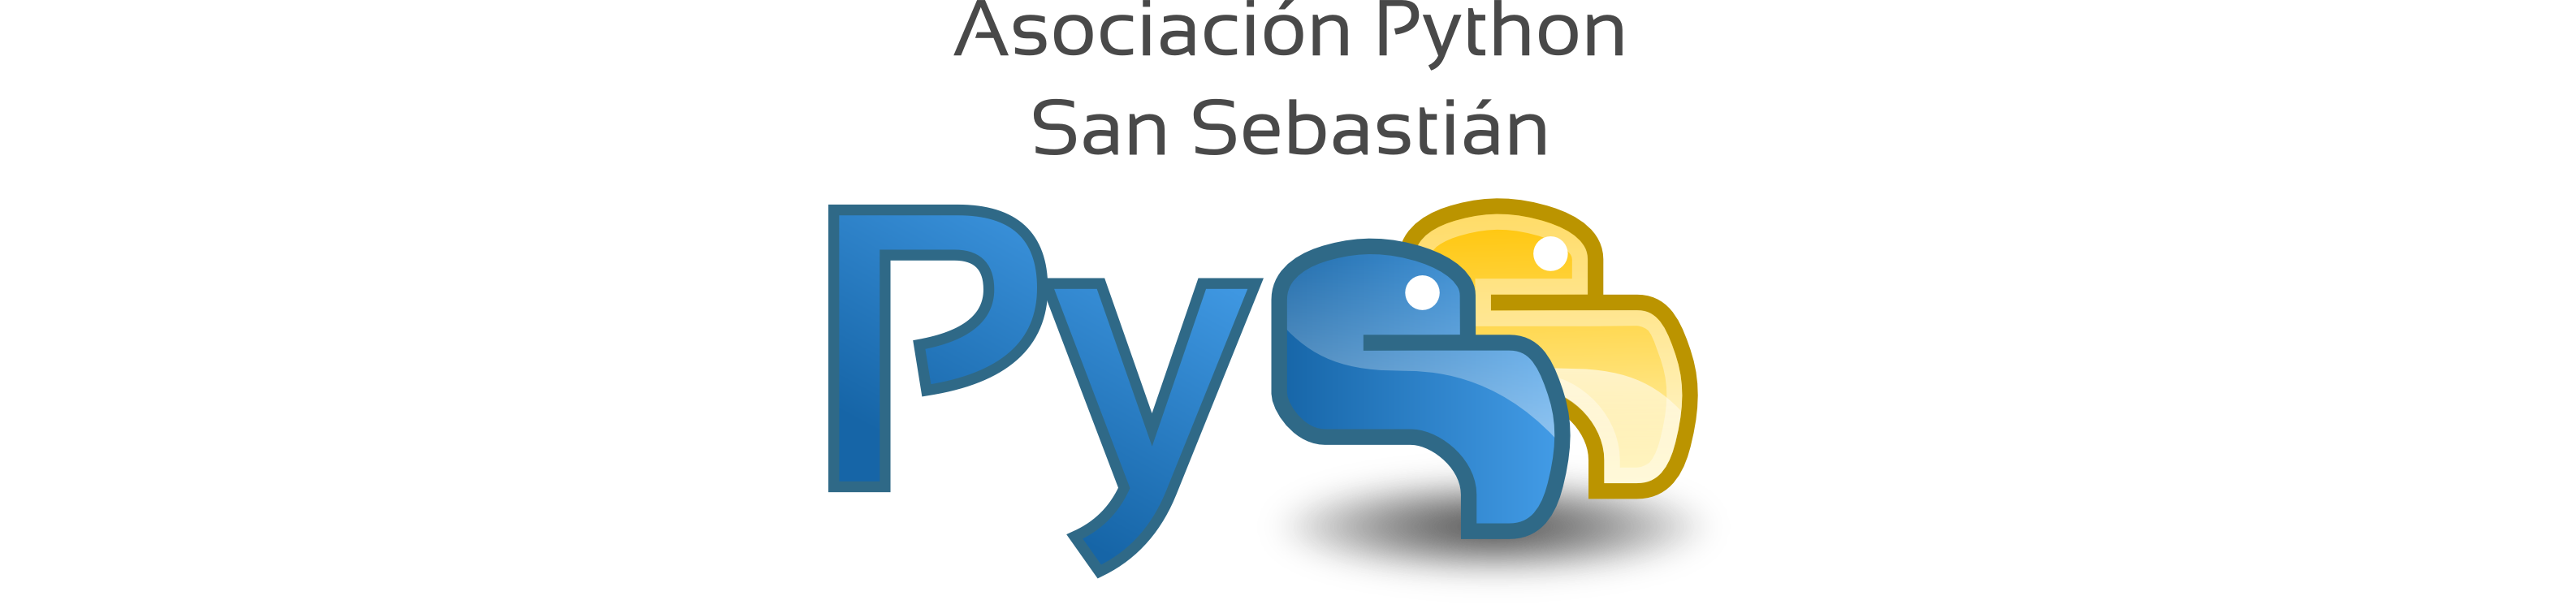 Python San Sebastián logo